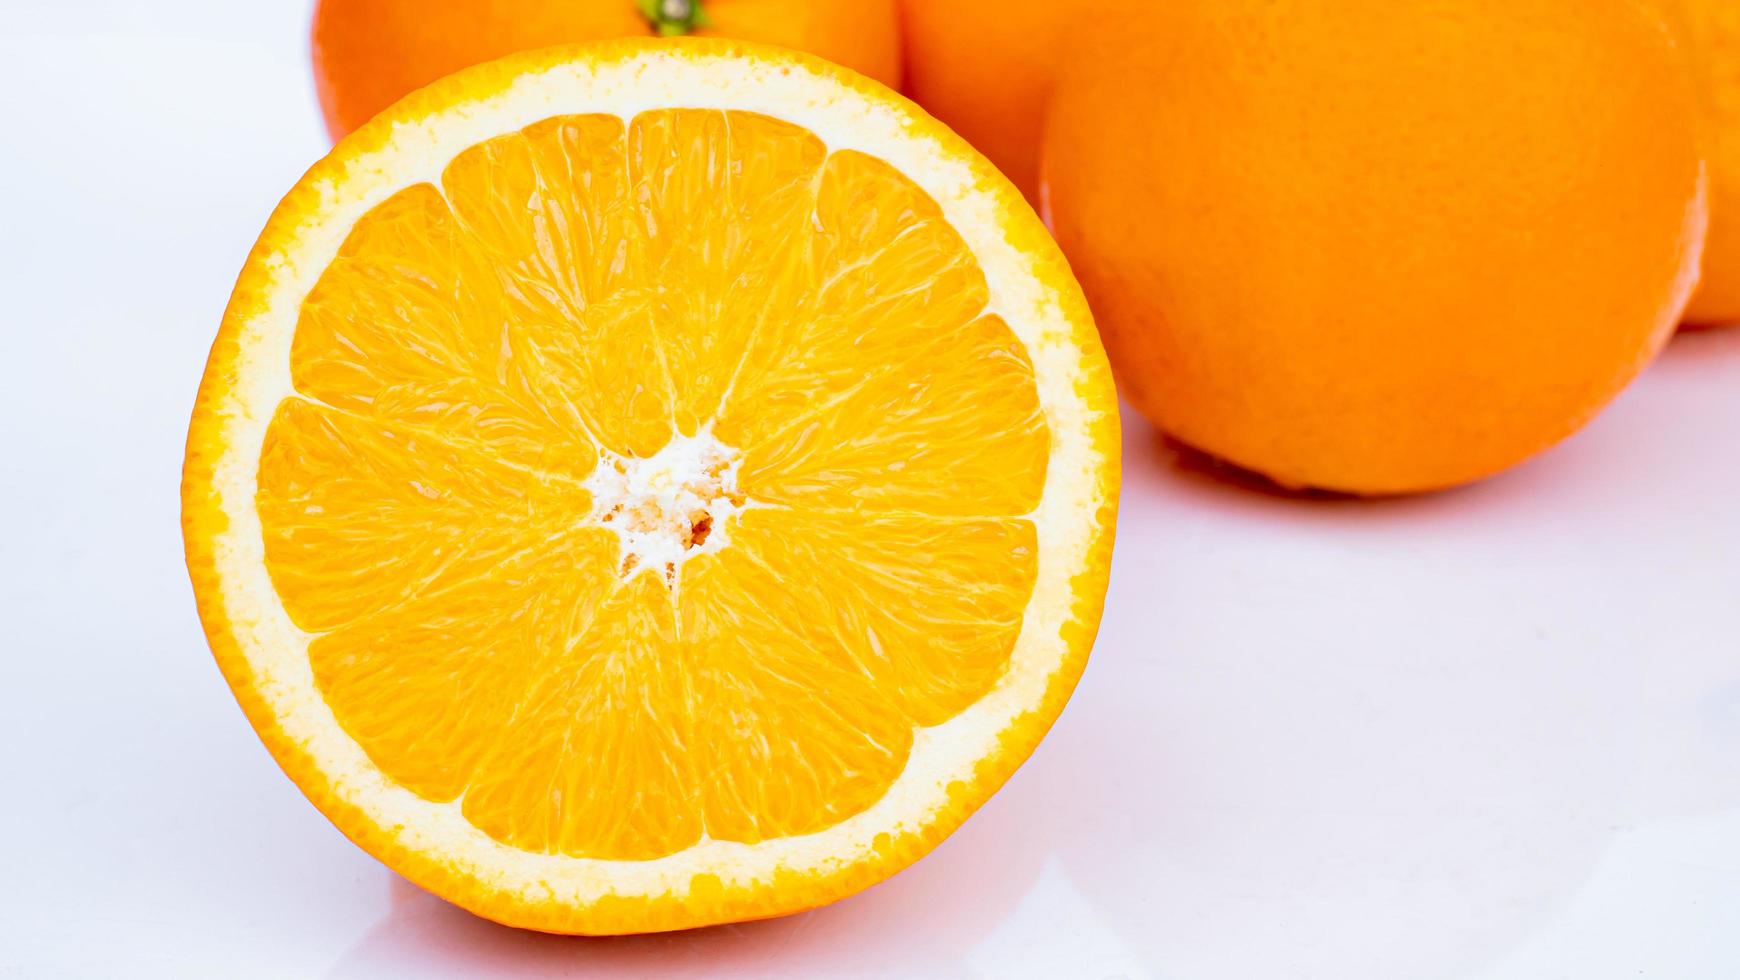 halvera och skiva en mogen apelsin med gyllengult skal. massor på vit bakgrund med skuggor och reflektioner foto